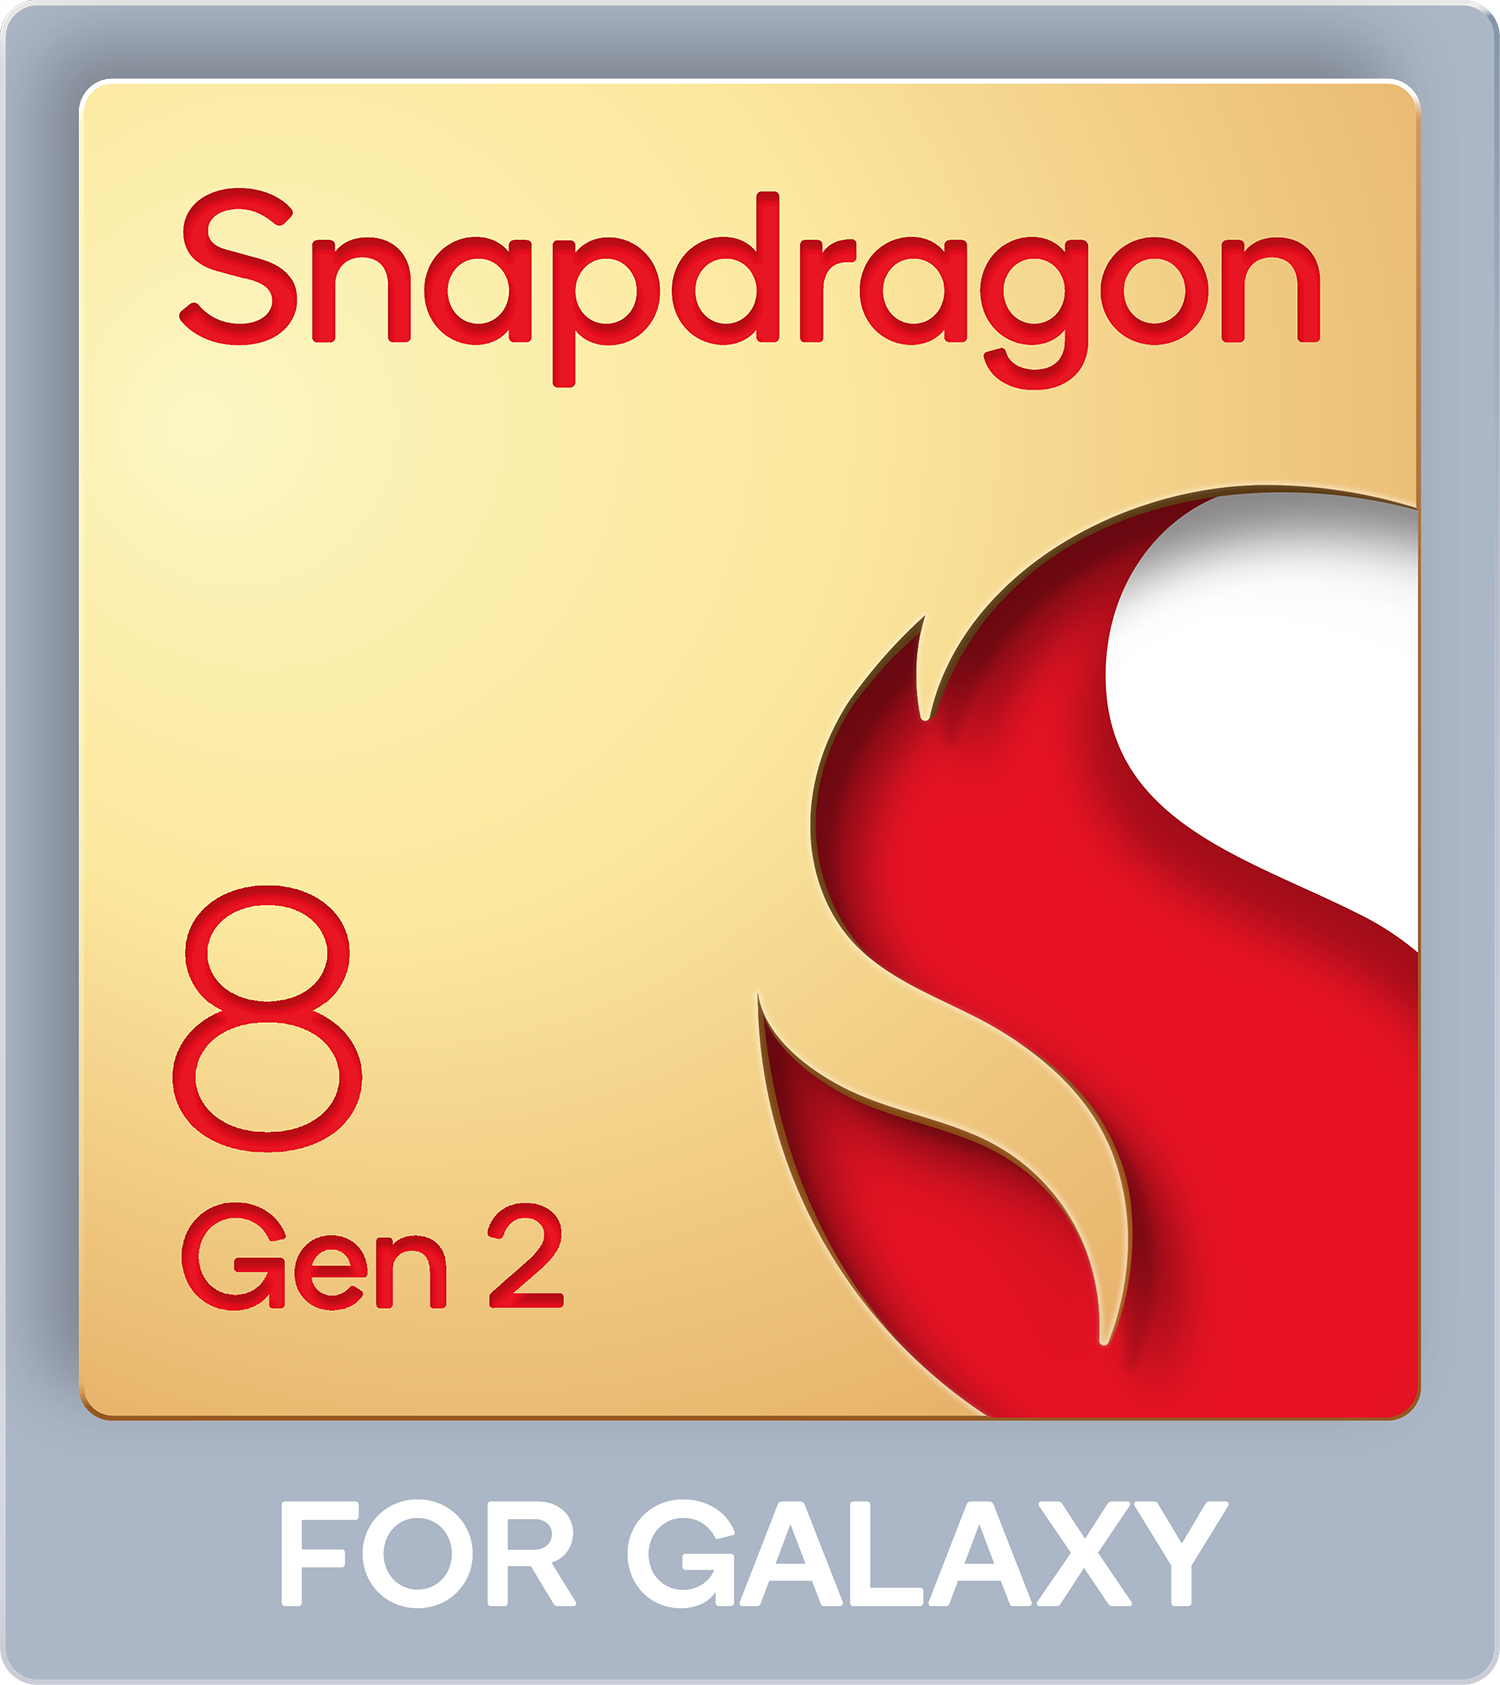 Snapdragon 8 Gen2 FOR GALAXY